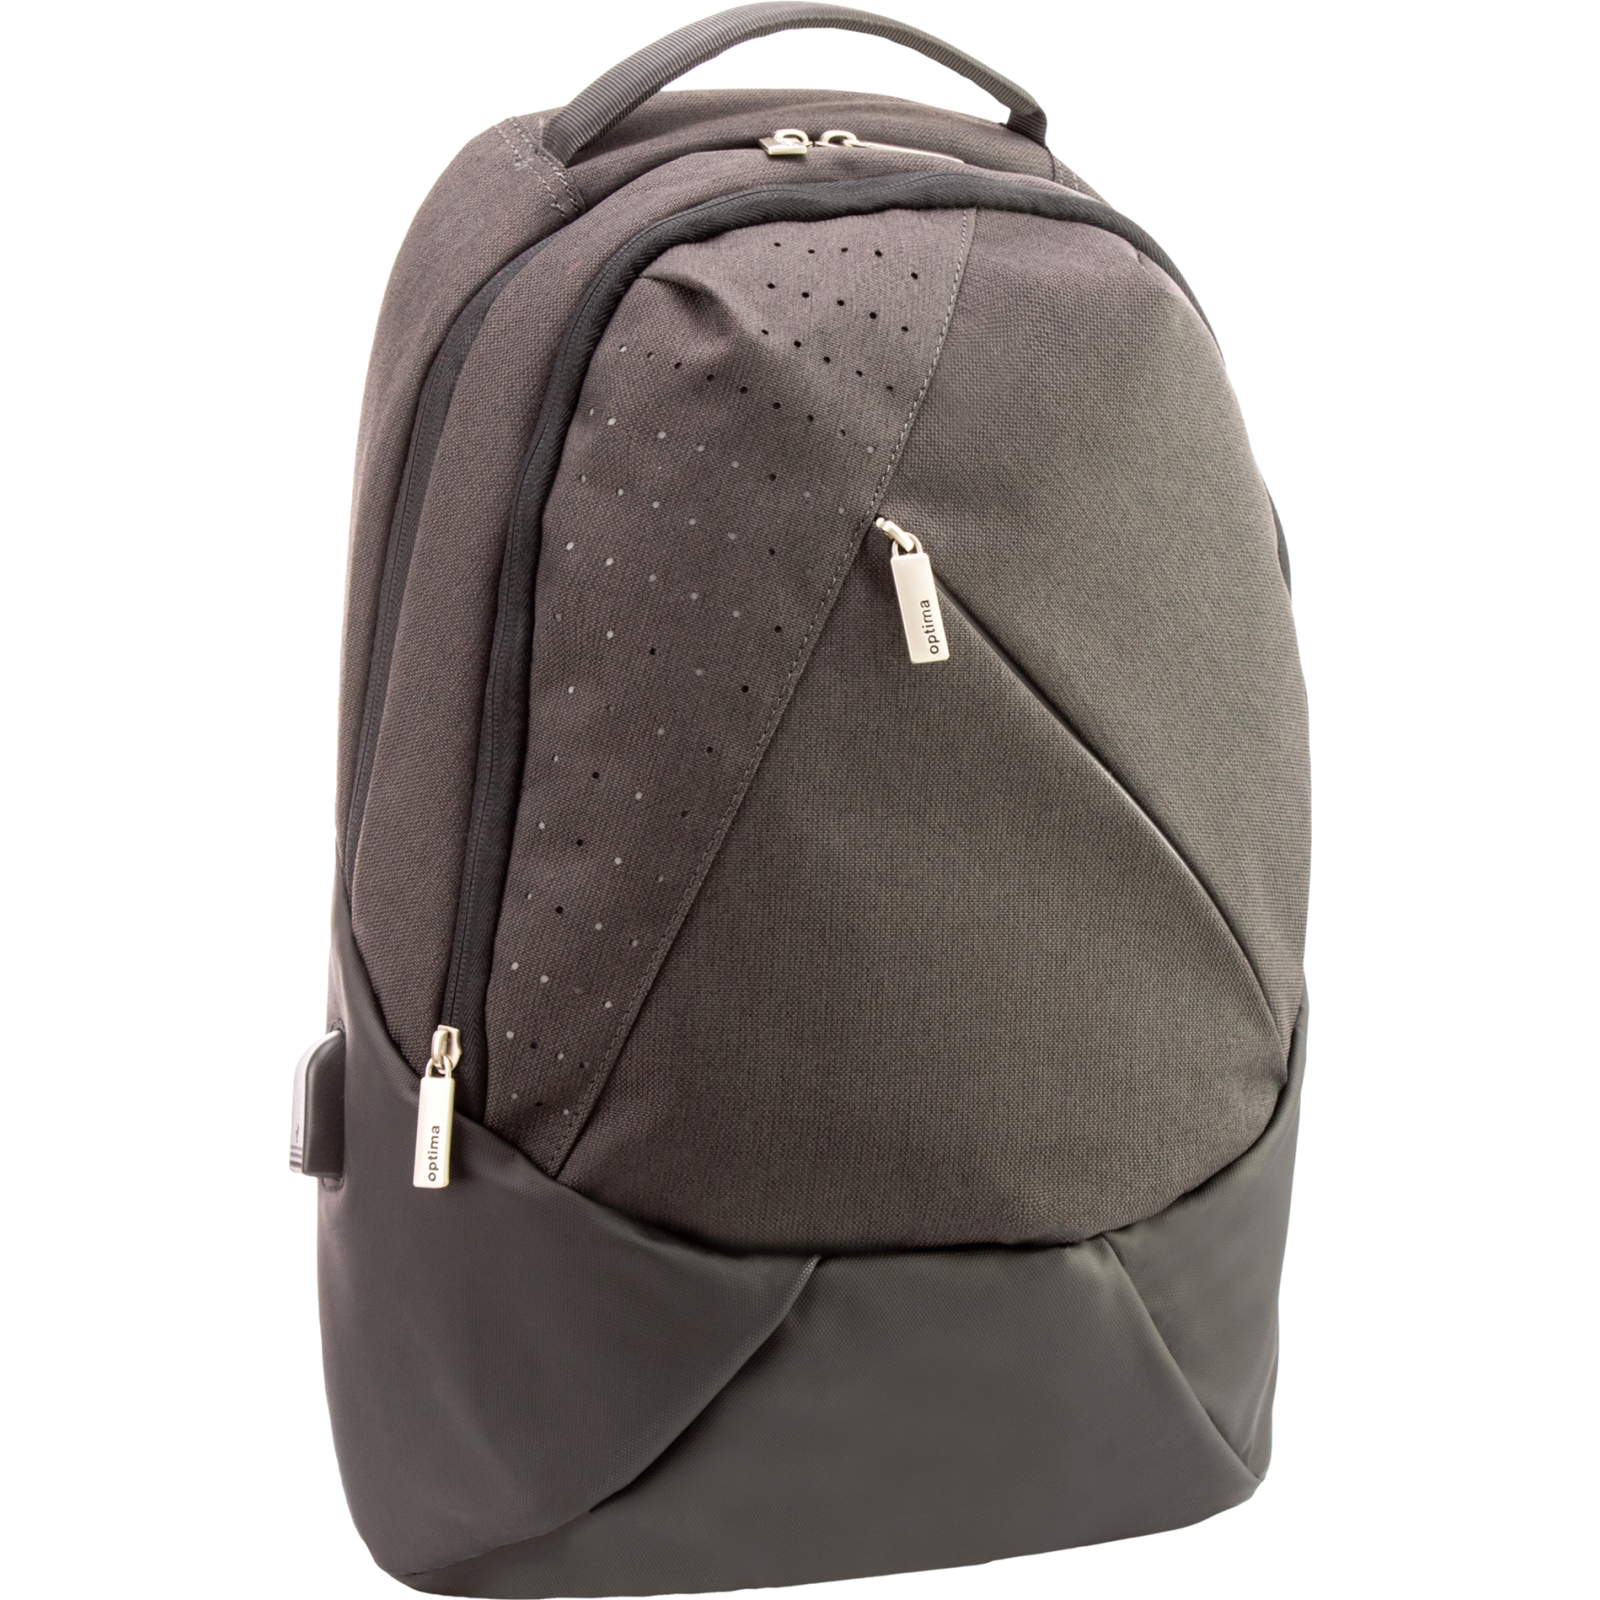 Рюкзак школьный Optima 17.5" Techno унисекс 0.7 кг 16-25 л Коричневый с выделенными элементами (O96910-01)